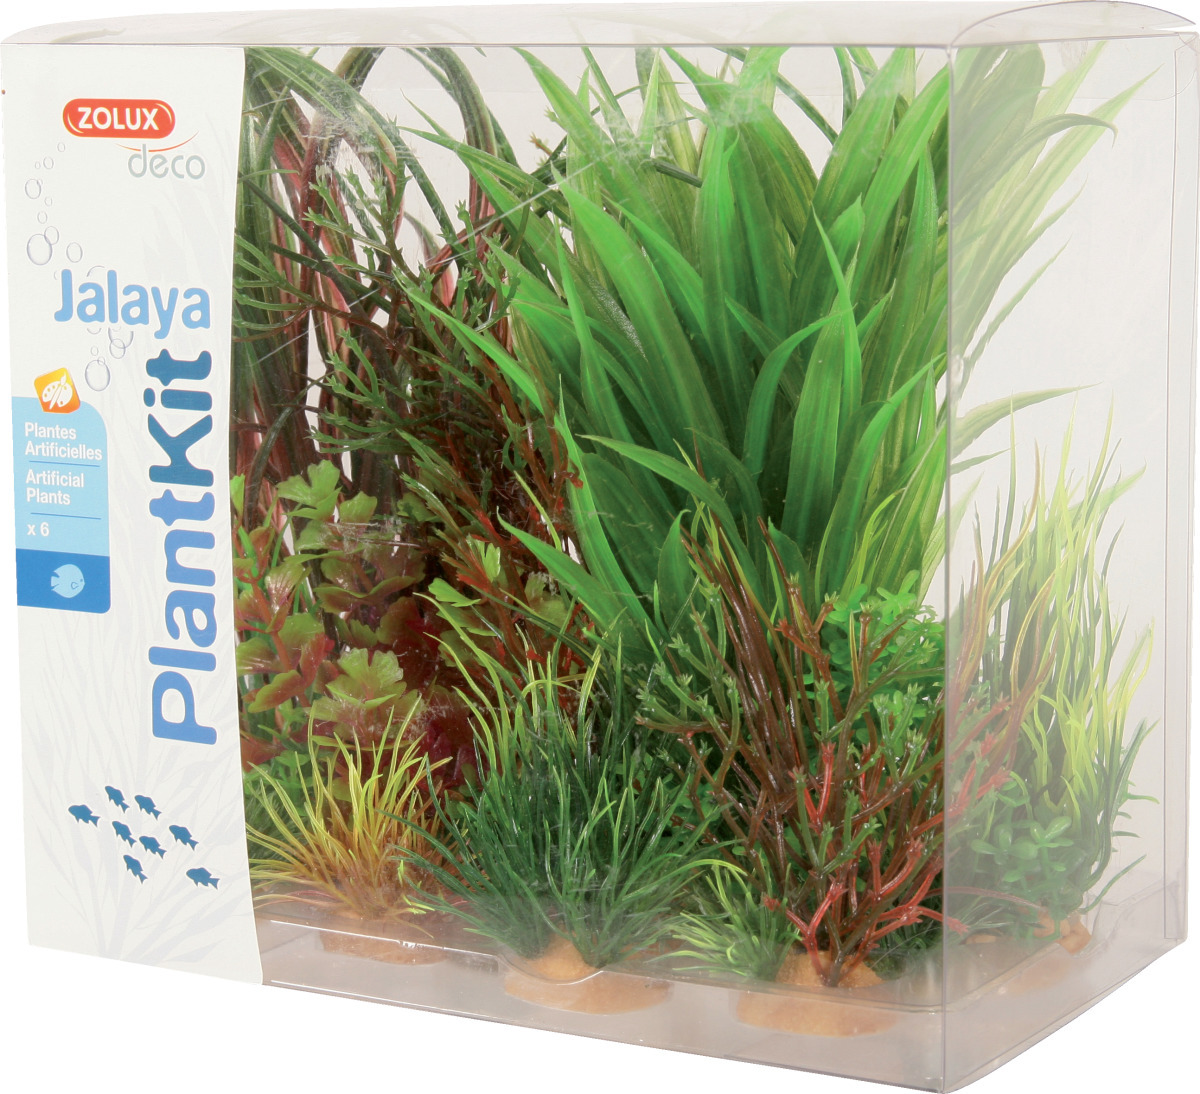 ZOLUX PlantKit Jalaya 3 - Lot de plantes artificielles pour aquarium